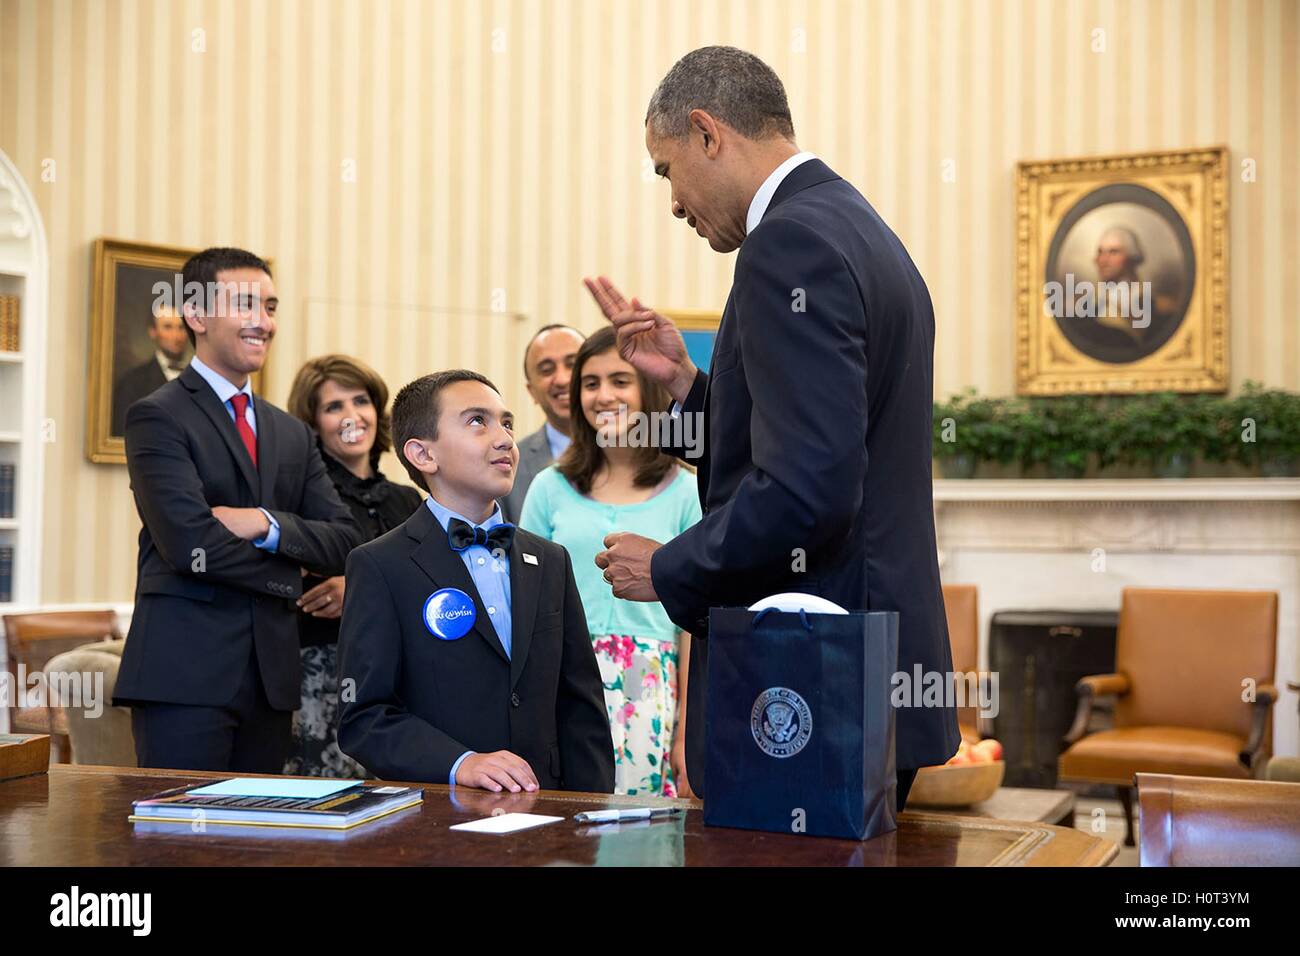 US-Präsident Barack Obama besucht mit 10-Year-Old Make-A-Wish Empfänger Sullimon Azai und seine Familie in das Weiße Haus Oval Office 17. Juni 2014 in Washington, DC. Stockfoto